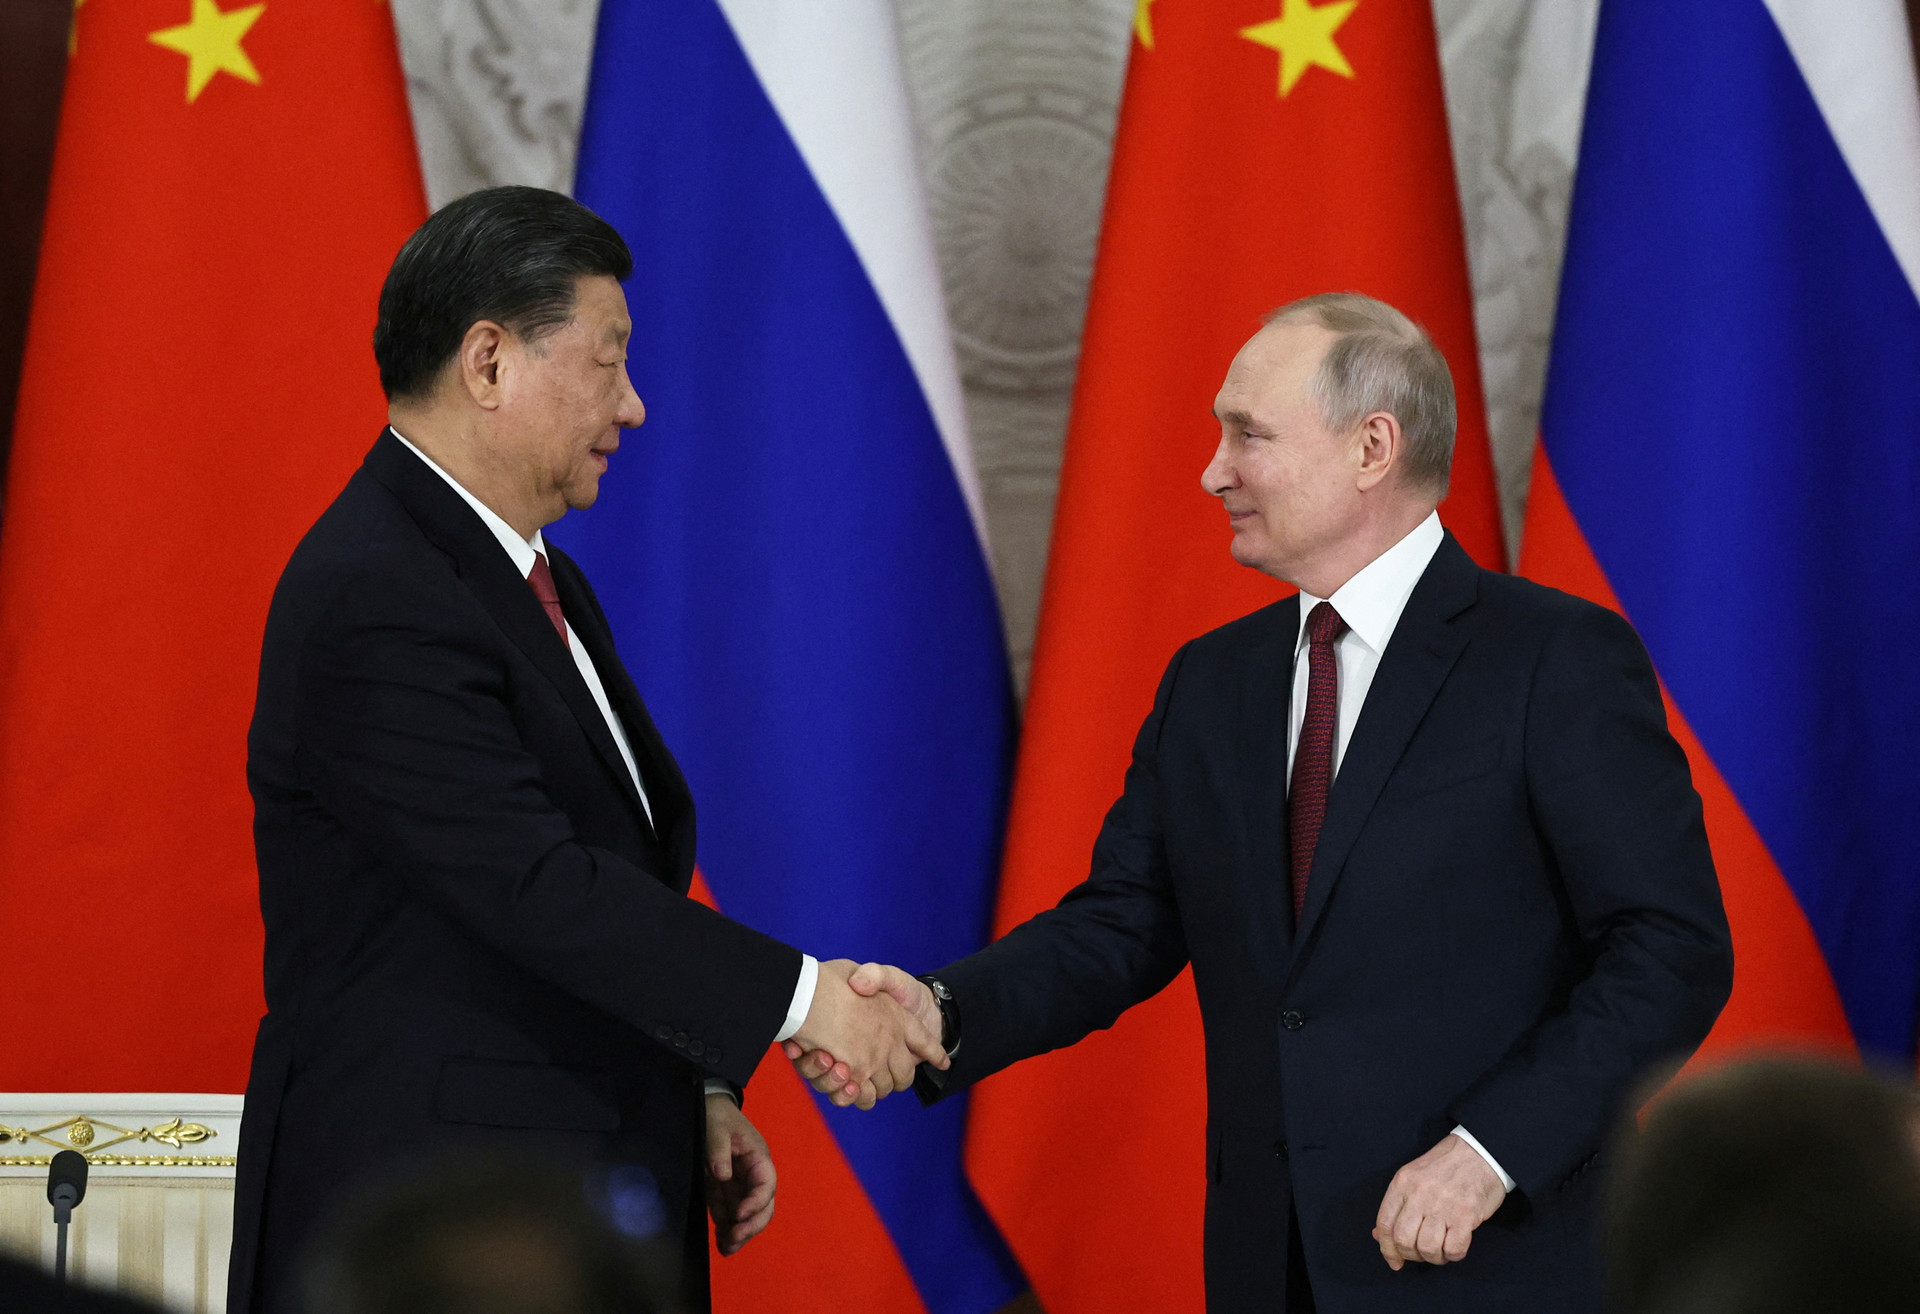 Nắm giữ thứ 'vàng đen' Trung Quốc săn lùng, Nga vẫn ngậm trái đắng vì hố sâu chiến lược: Thỏa thuận thế kỷ tiêu tan? - Ảnh 2.